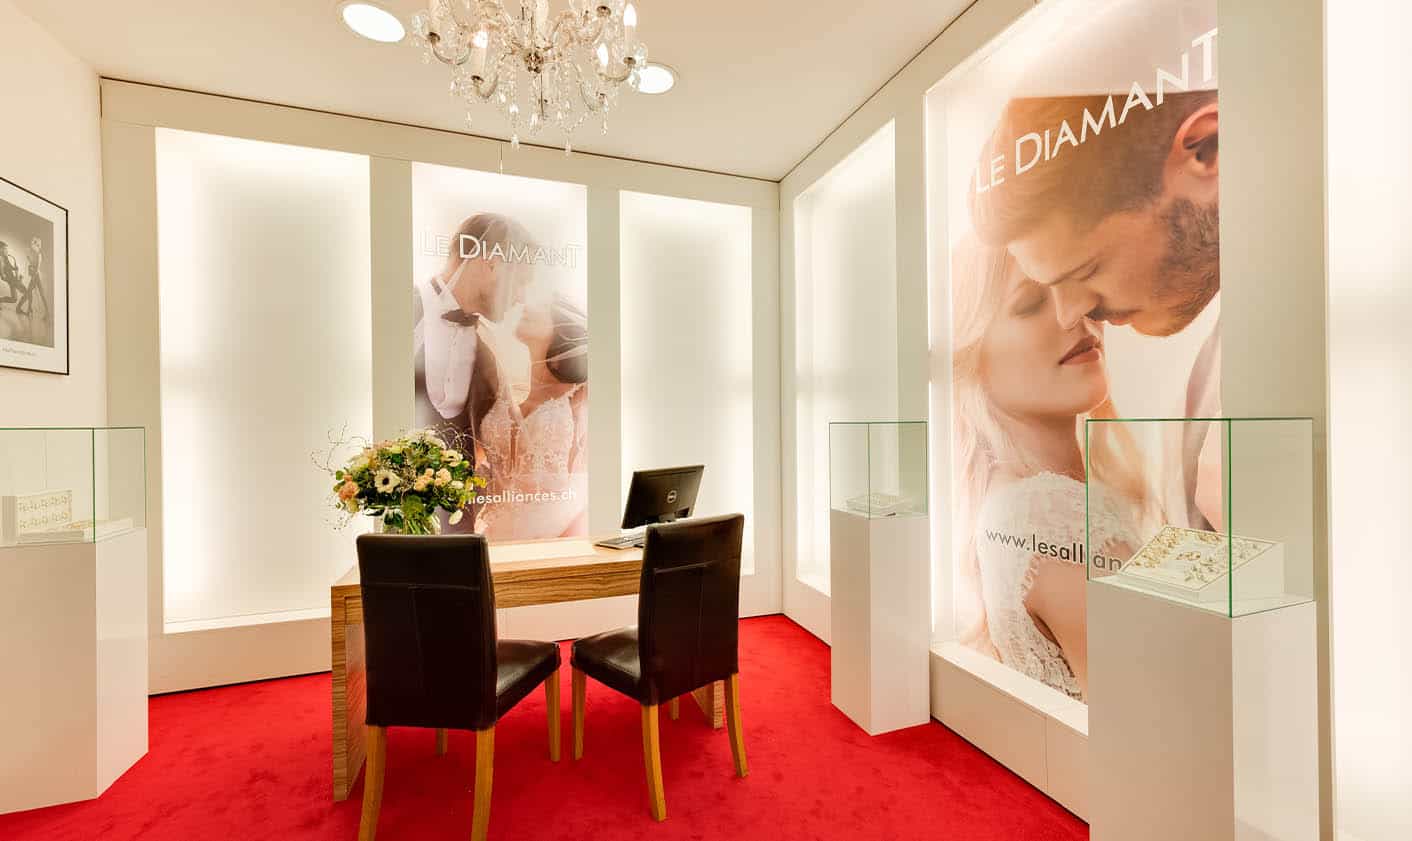 Le Diamant - Bijouterie & horlogerie : Unser Geschäft in La Chaux-de-Fonds berät Sie gerne